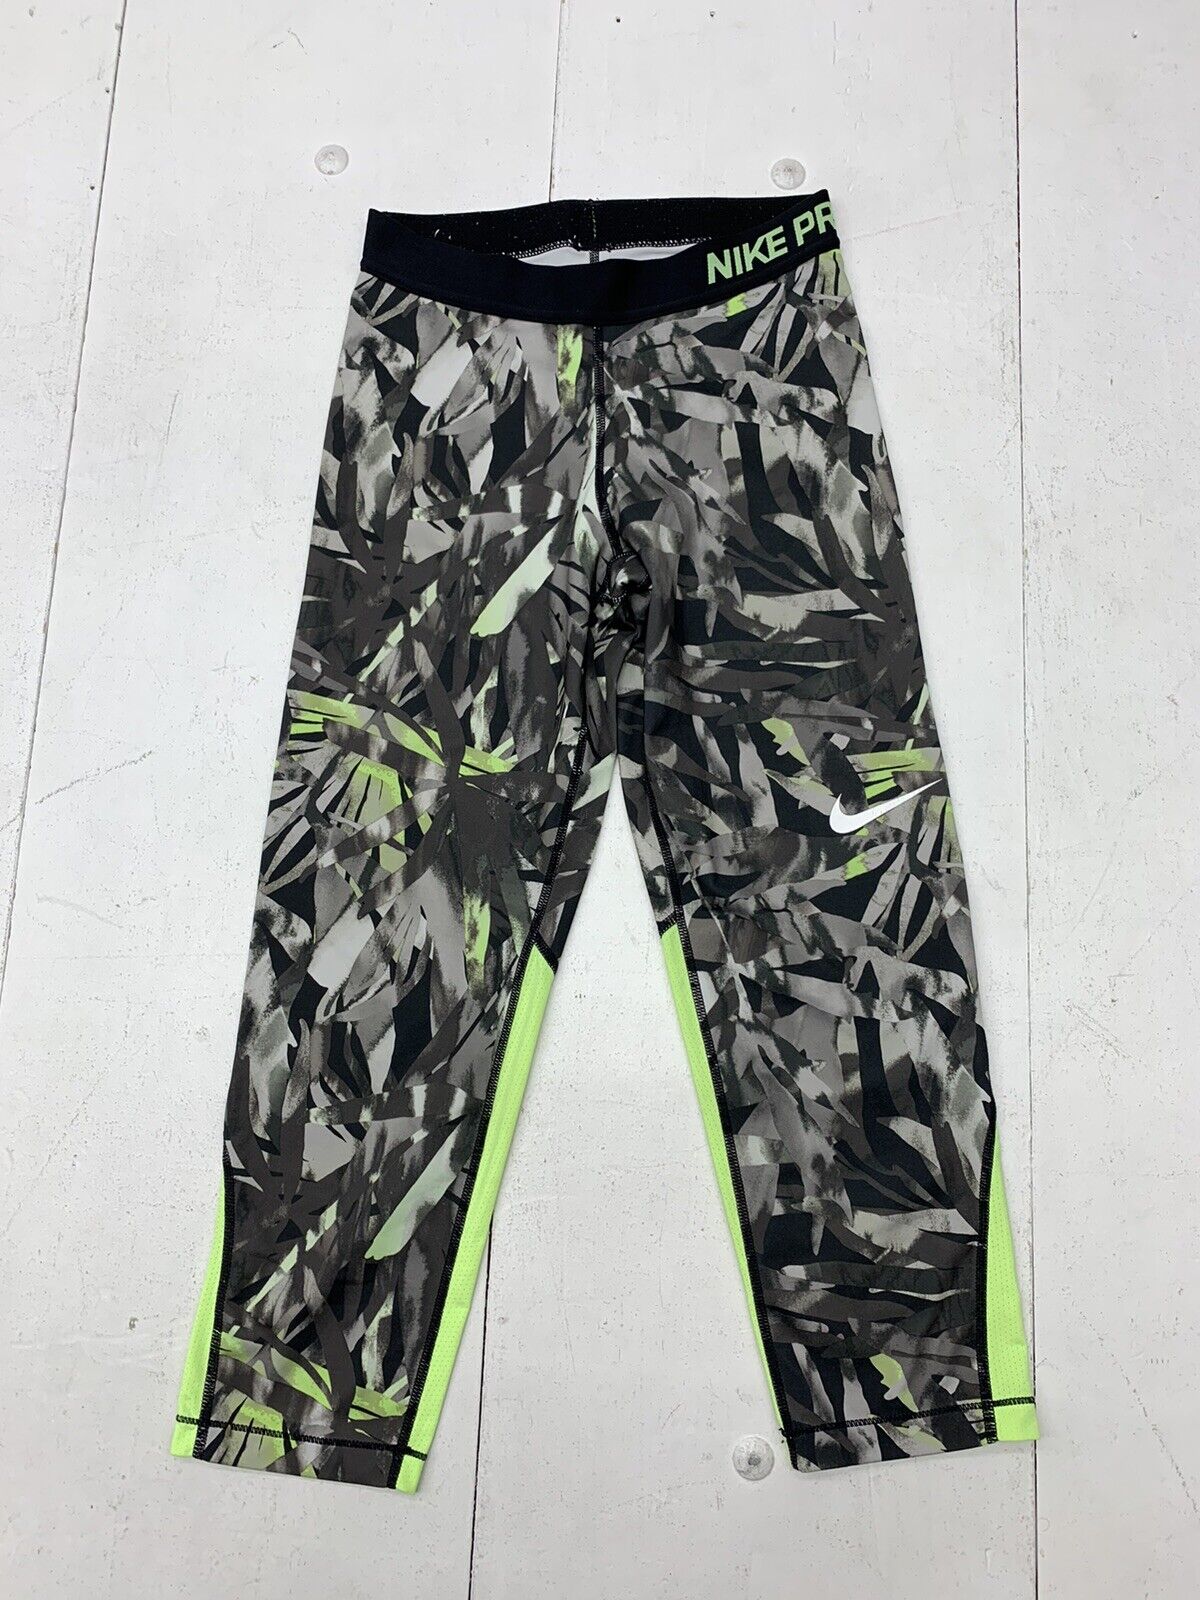 Nike Drifit Womens Green Gray Geometric Print Athletic Leggings Size S -  beyond exchange